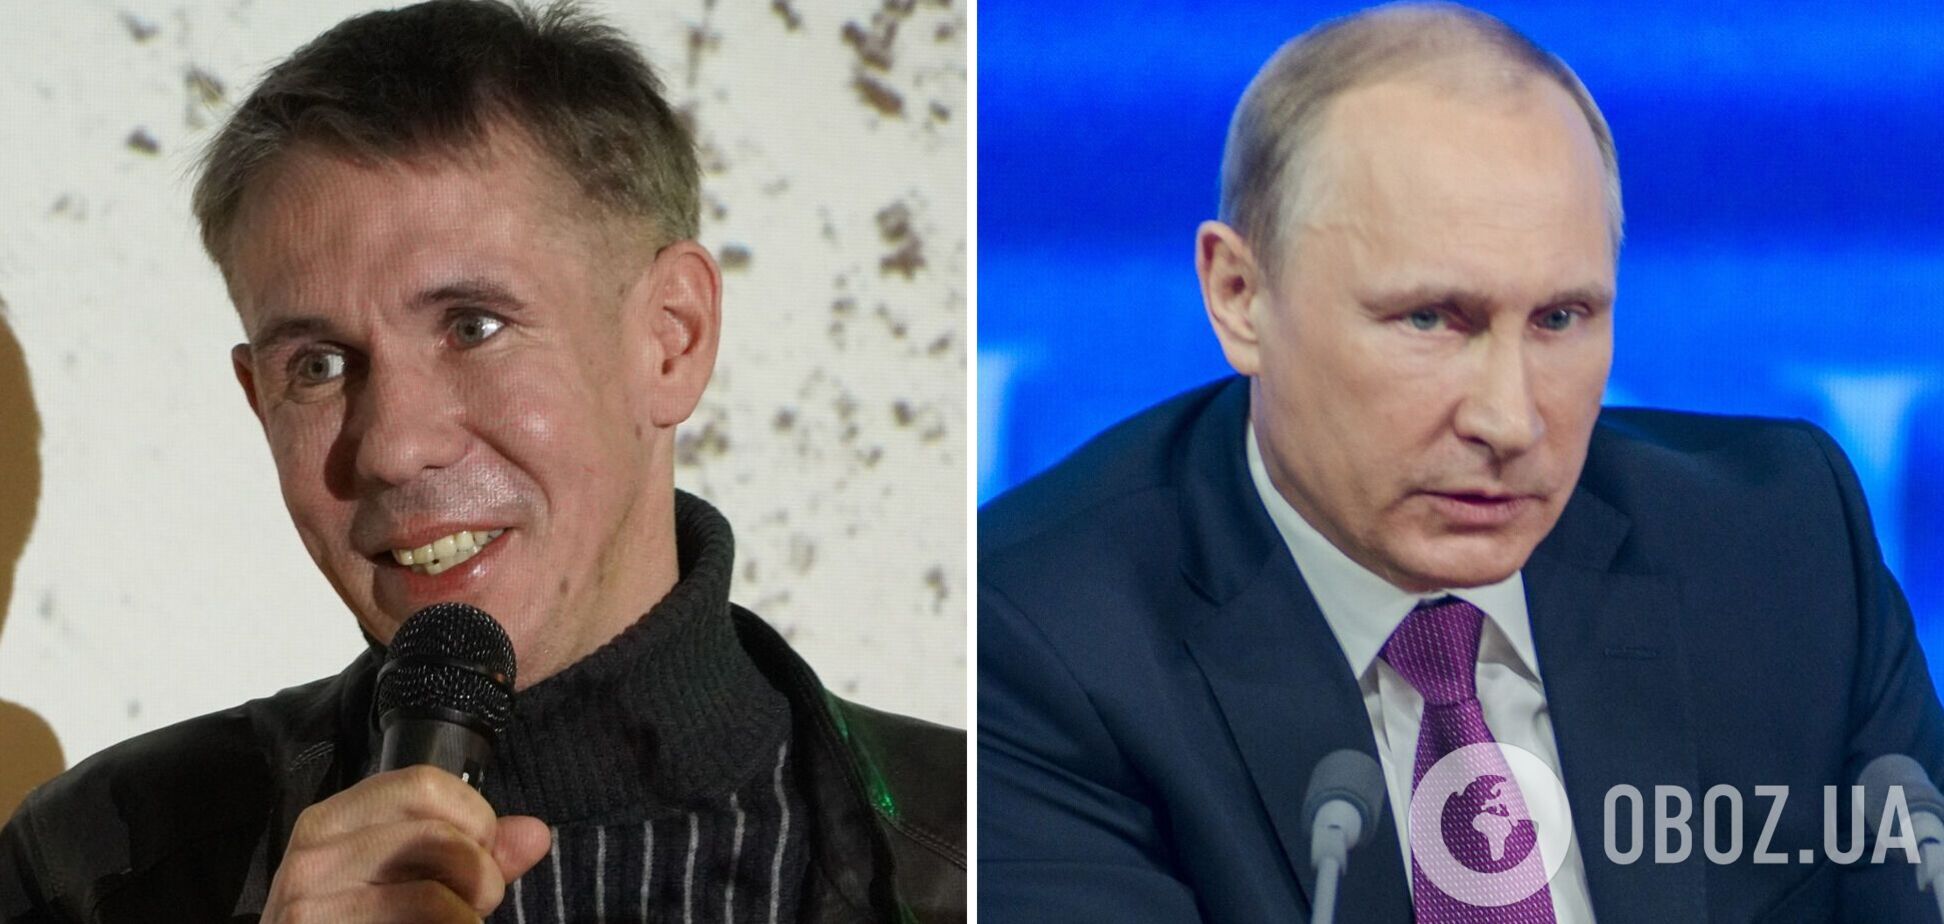 Панин признался, что в России не сказал бы в лоб 'Путин – убийца', и назвал причину